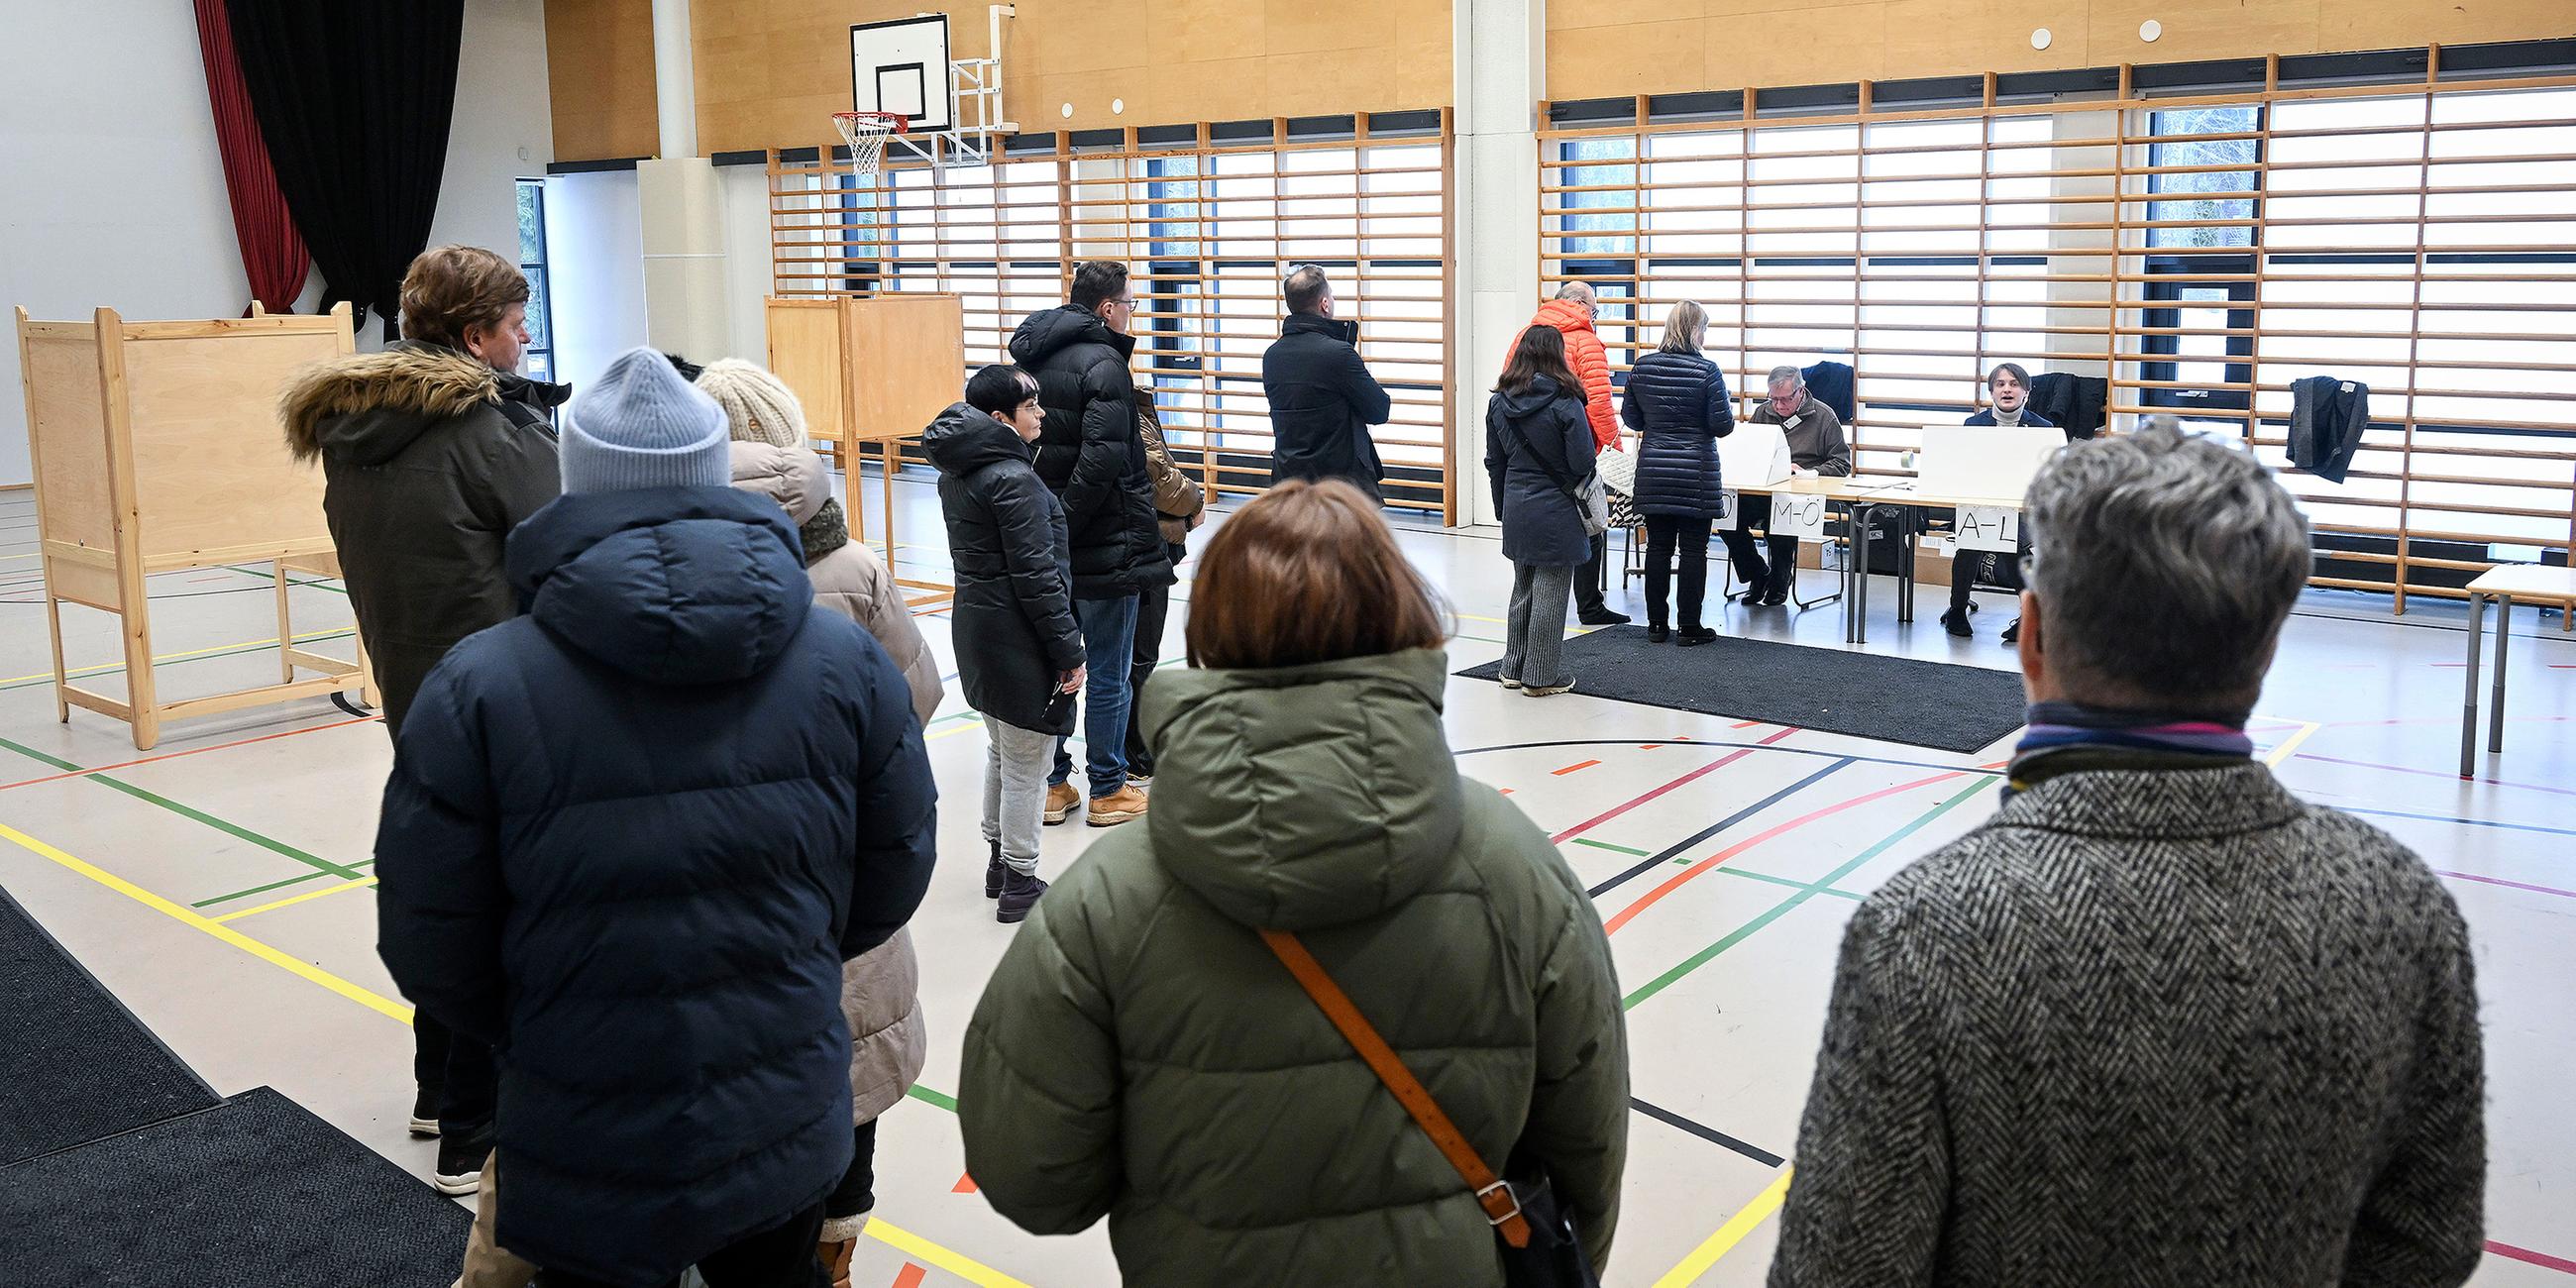 Wähler geben ihre Stimme bei Präsidentschaftswahlen in Espoo, Finland, ab